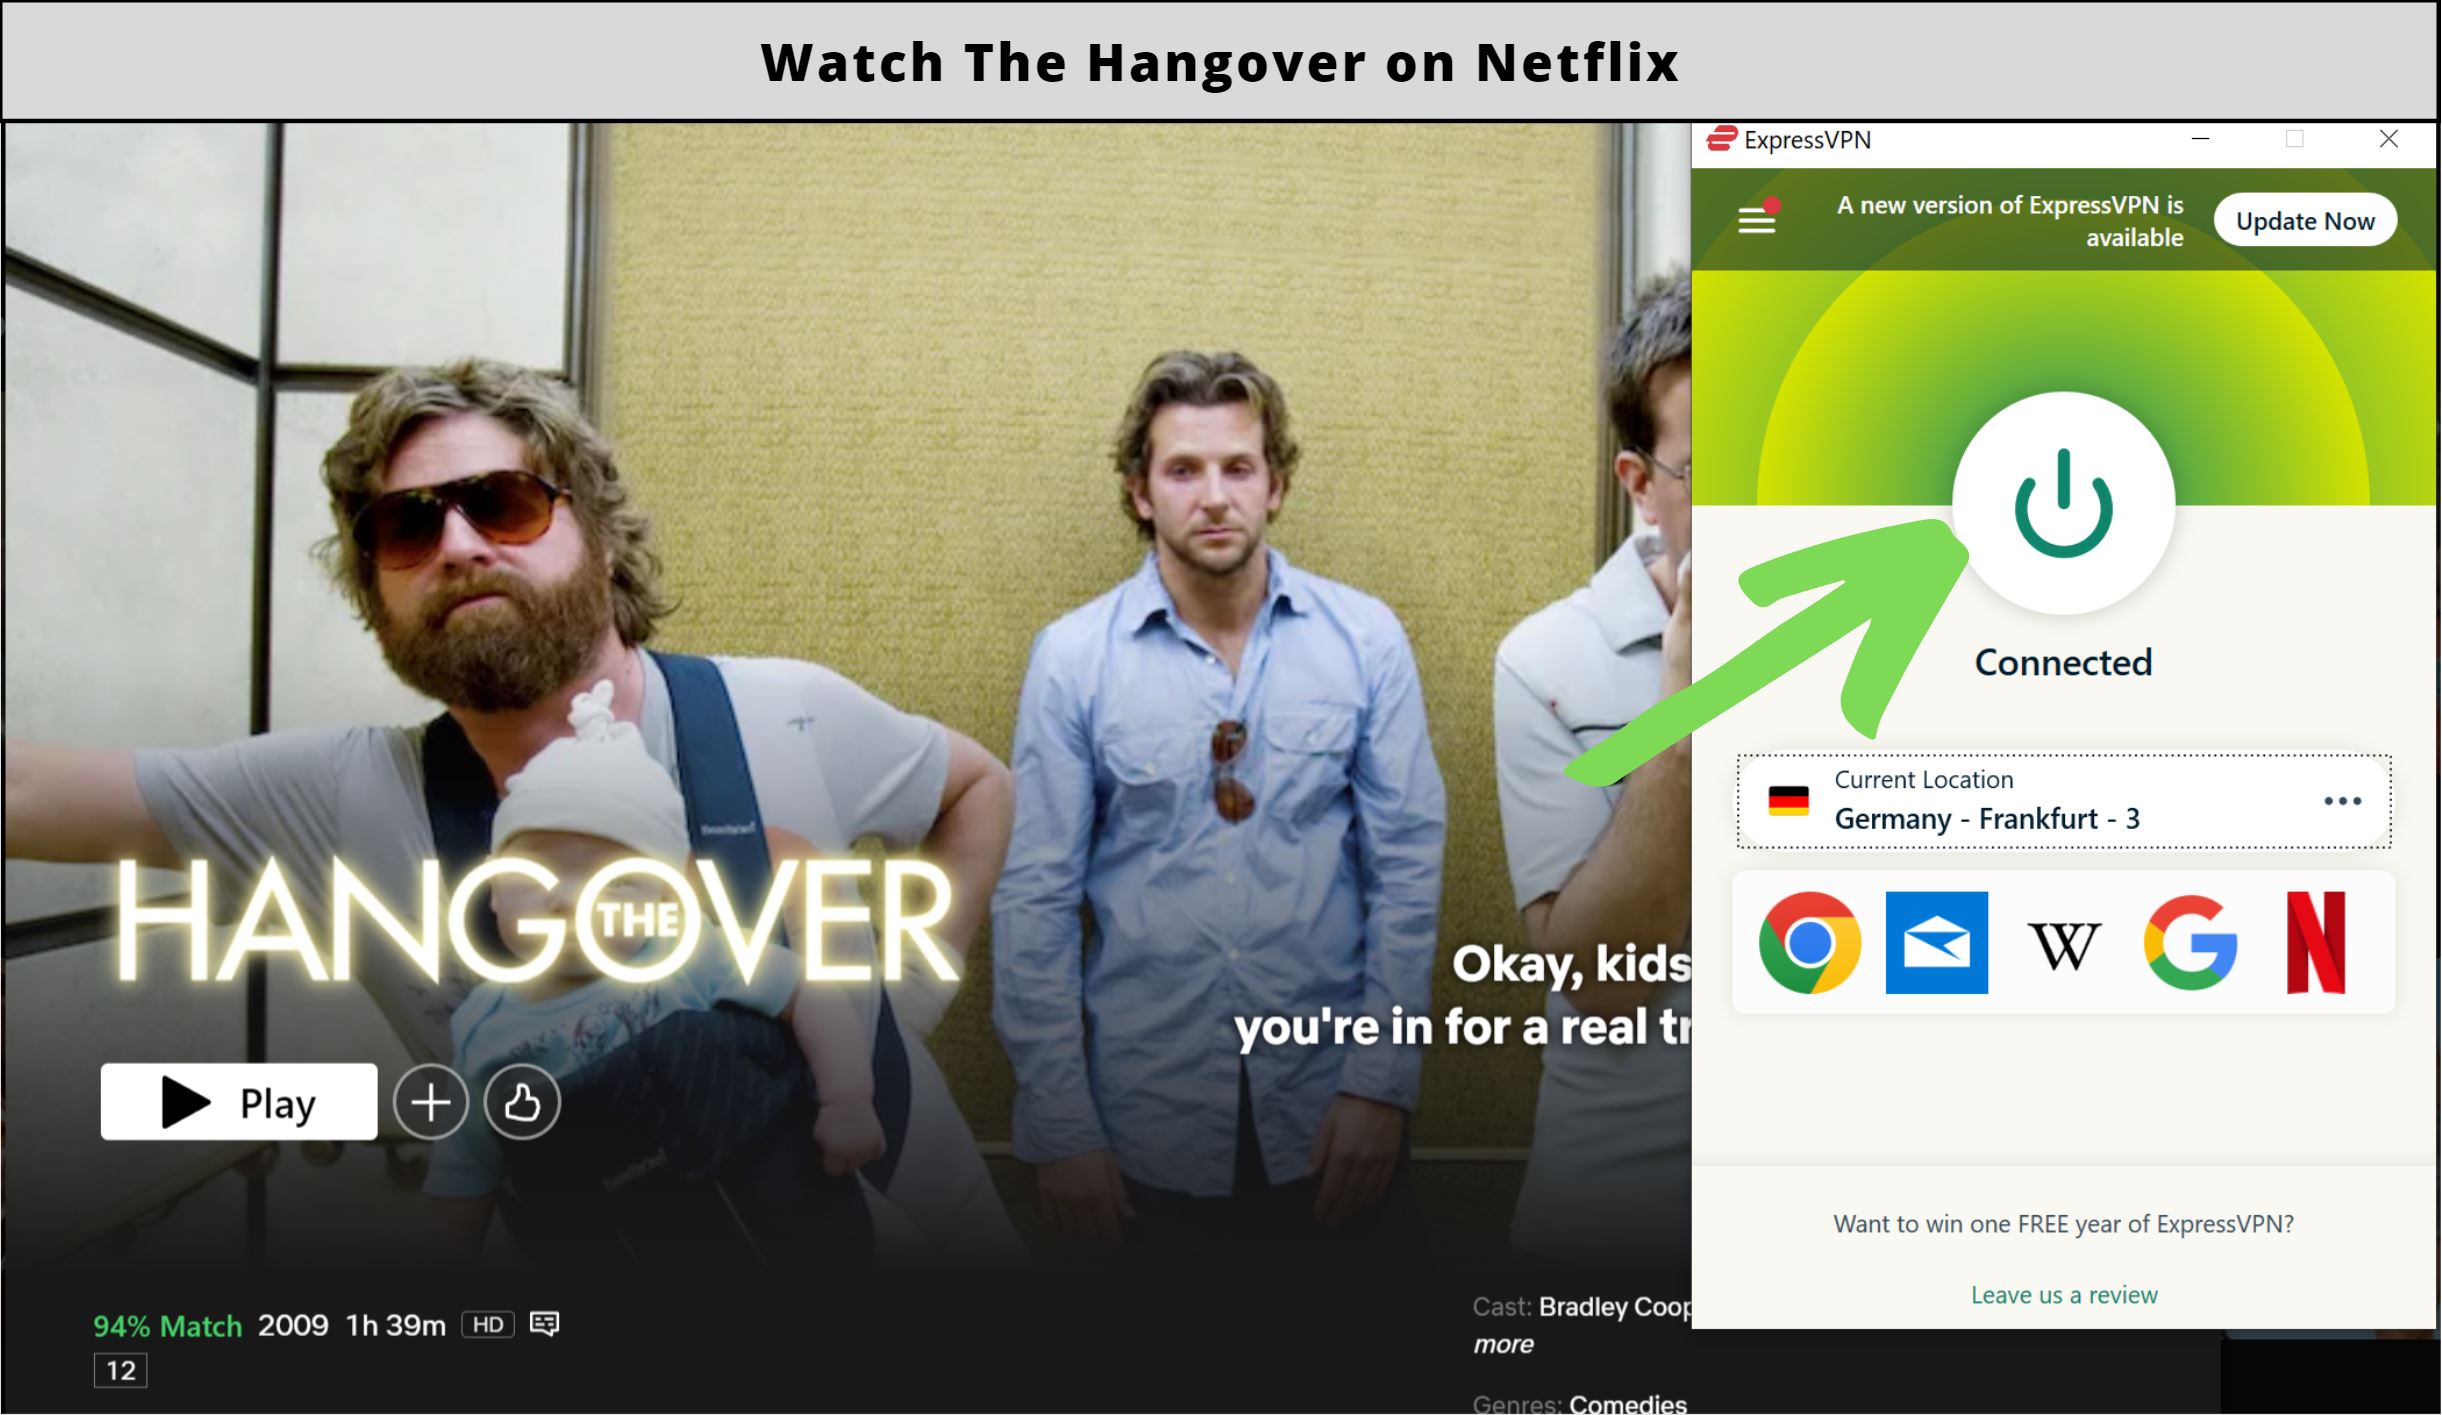 Is The Hangover on Netflix?